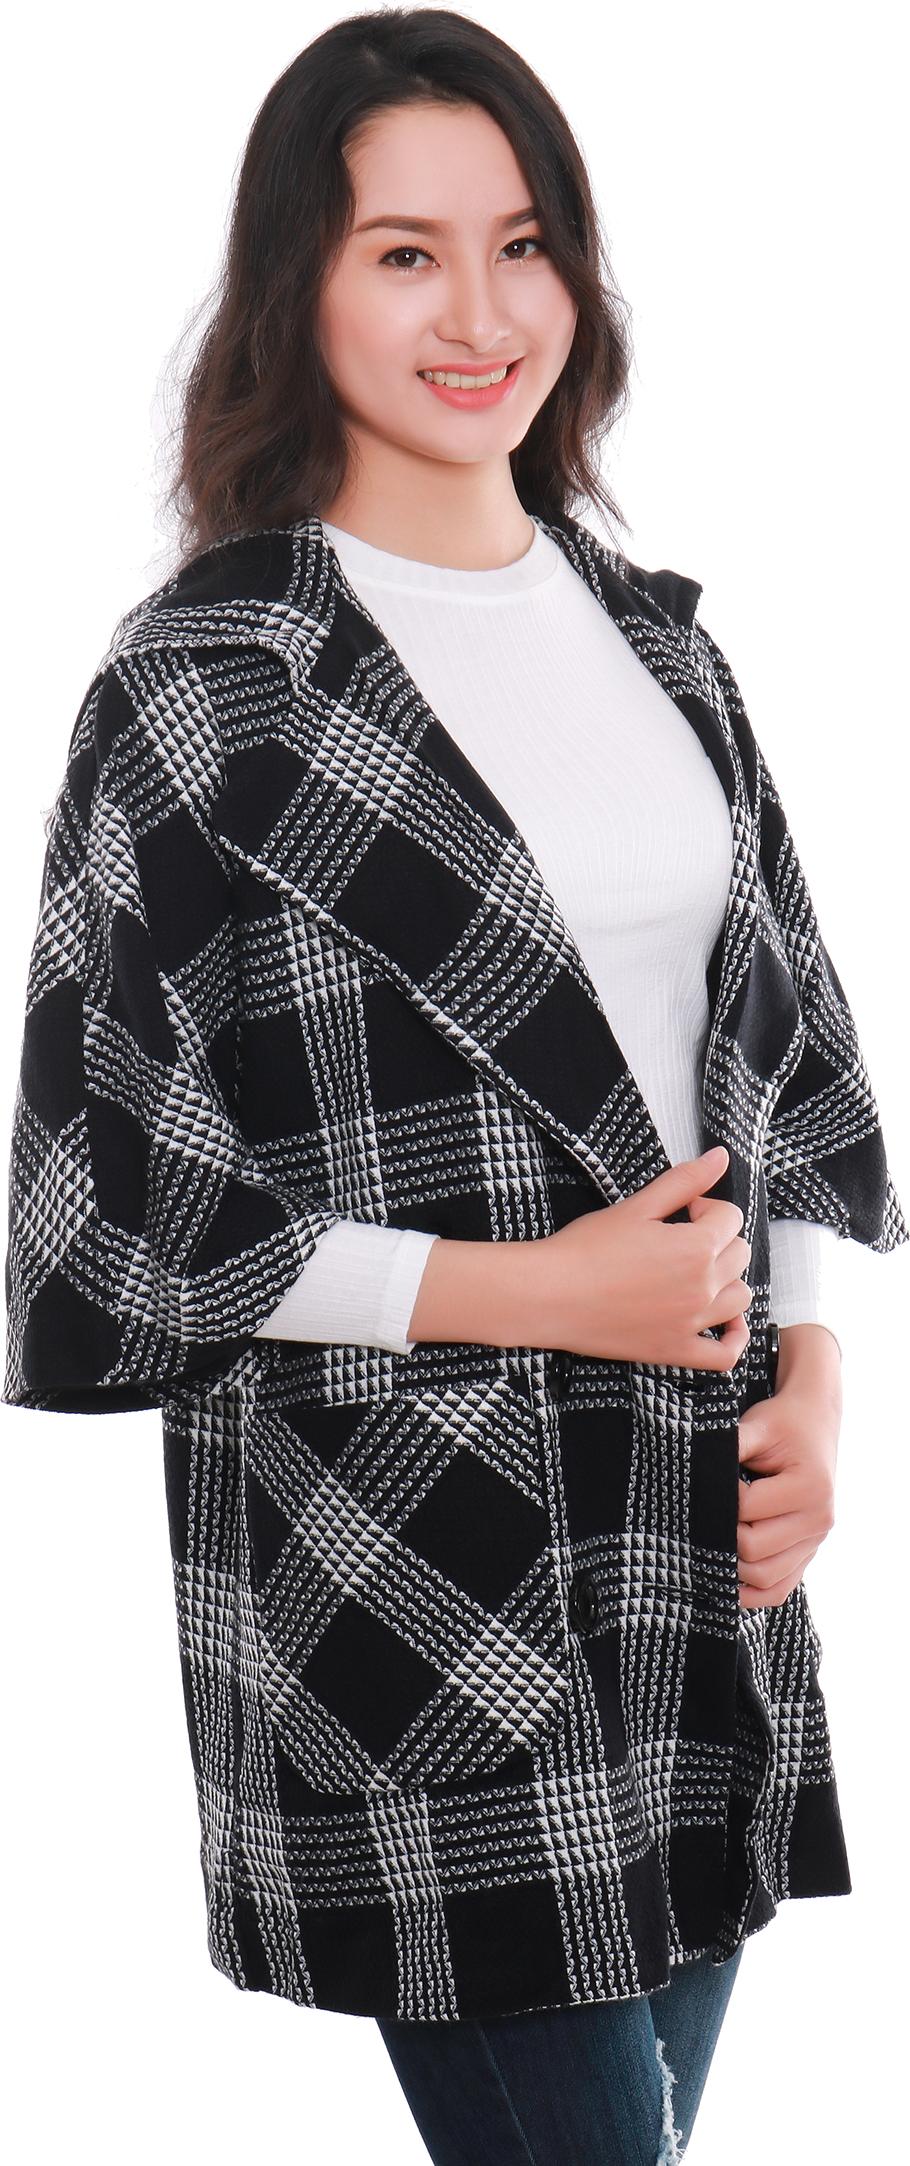 Áo khoác nữ cao cấp Narsis L9034 màu kẻ caro đen trắng  trẻ trung năng động, chất liệu  cao cấp cực mềm mại thông thoáng